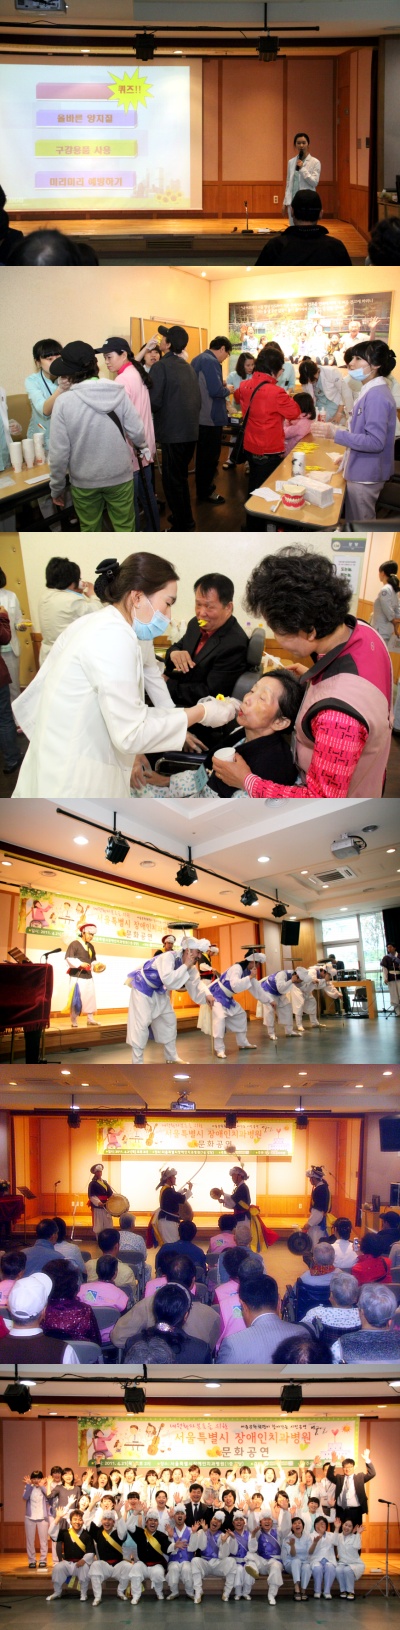 2011 장애인의날 기념 문화공연 개최